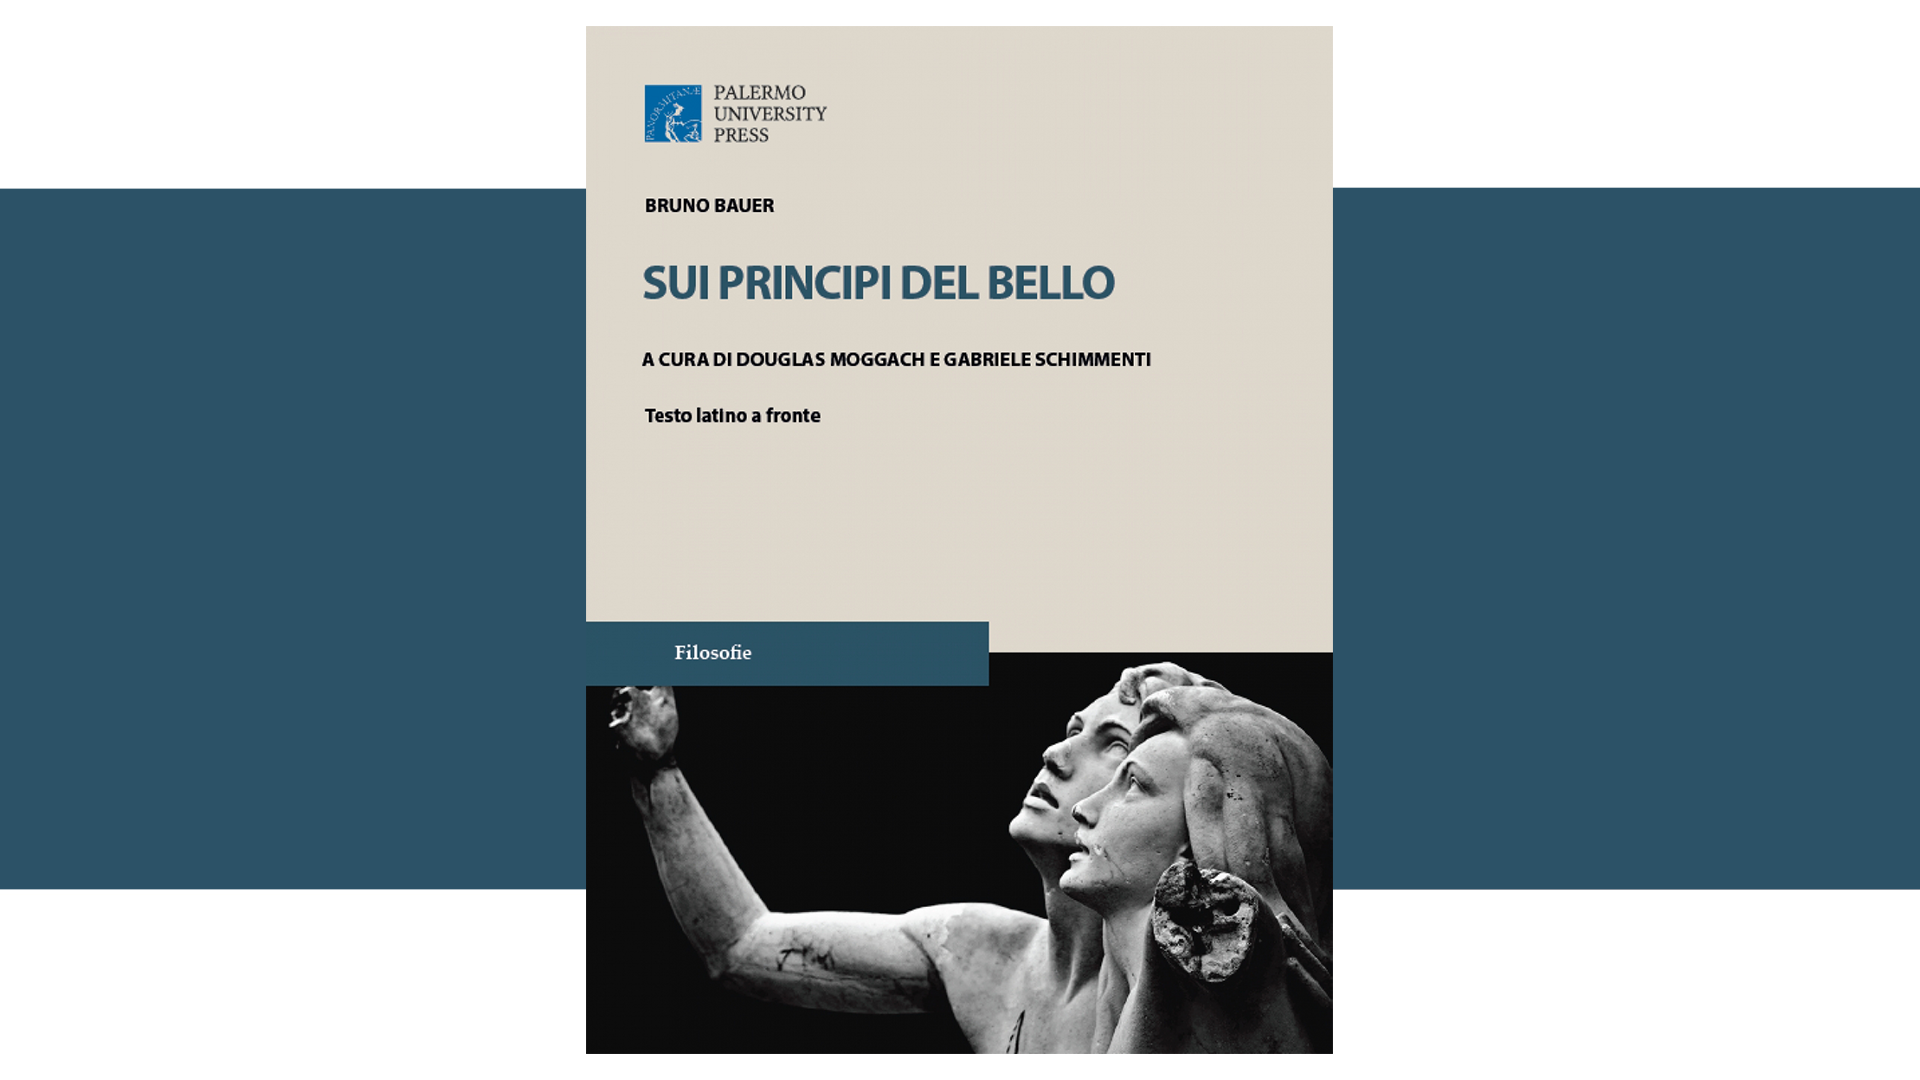 Presentazione della prima edizione italiana del volume "Sui Princìpi del Bello" di Bruno Bauer, a cura di Douglas Moggach e Gabriele Schimmenti